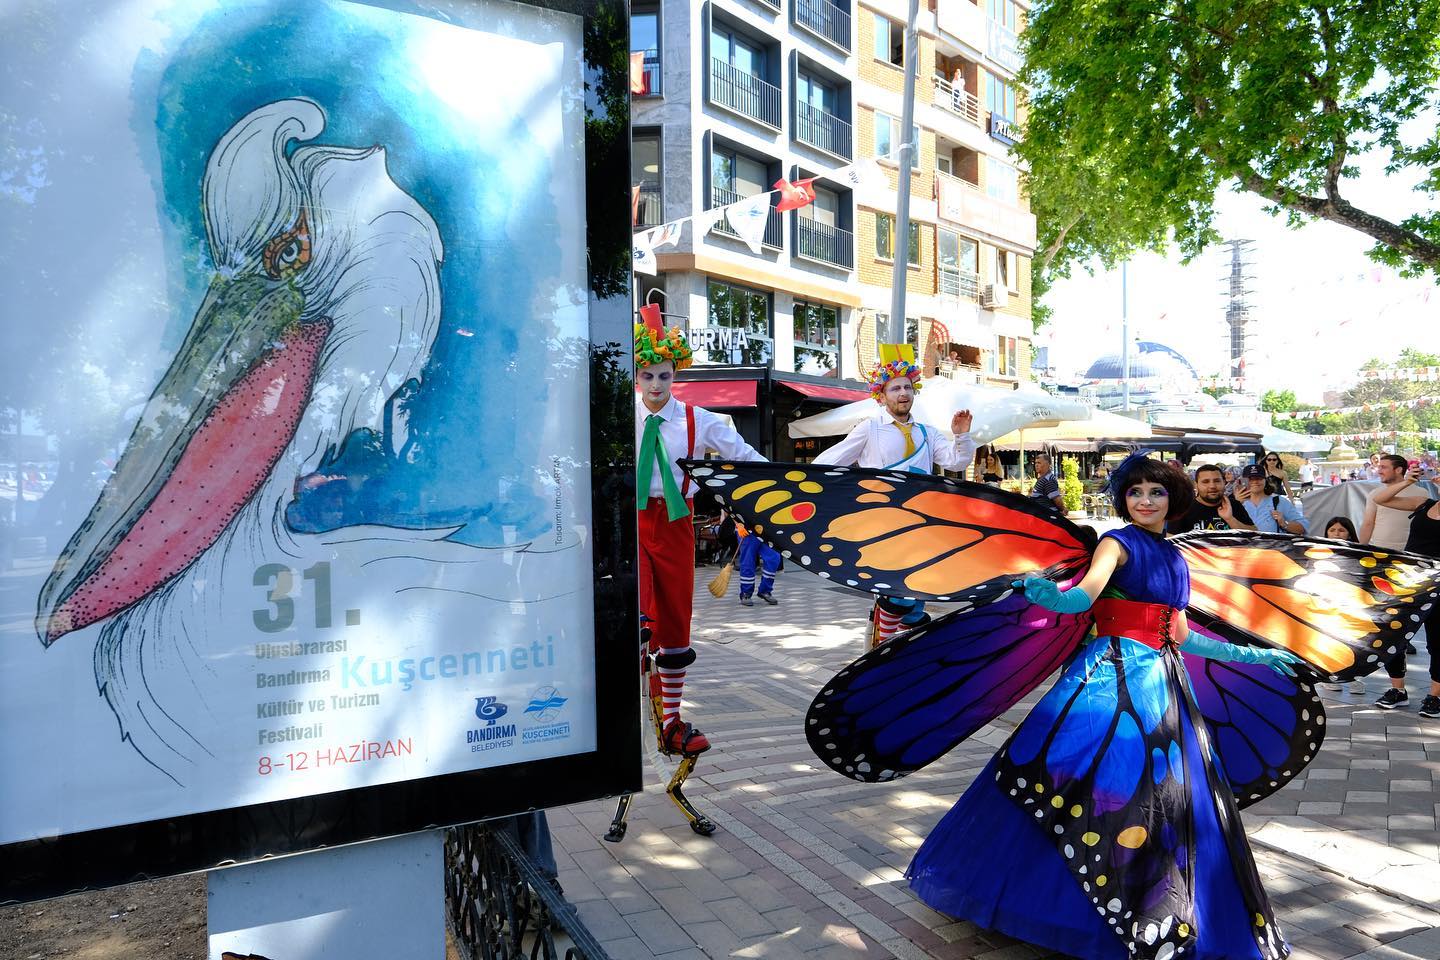 31. Uluslararası Bandırma Kuşcenneti Kültür ve Turizm Festivali Dolu Doluydu!